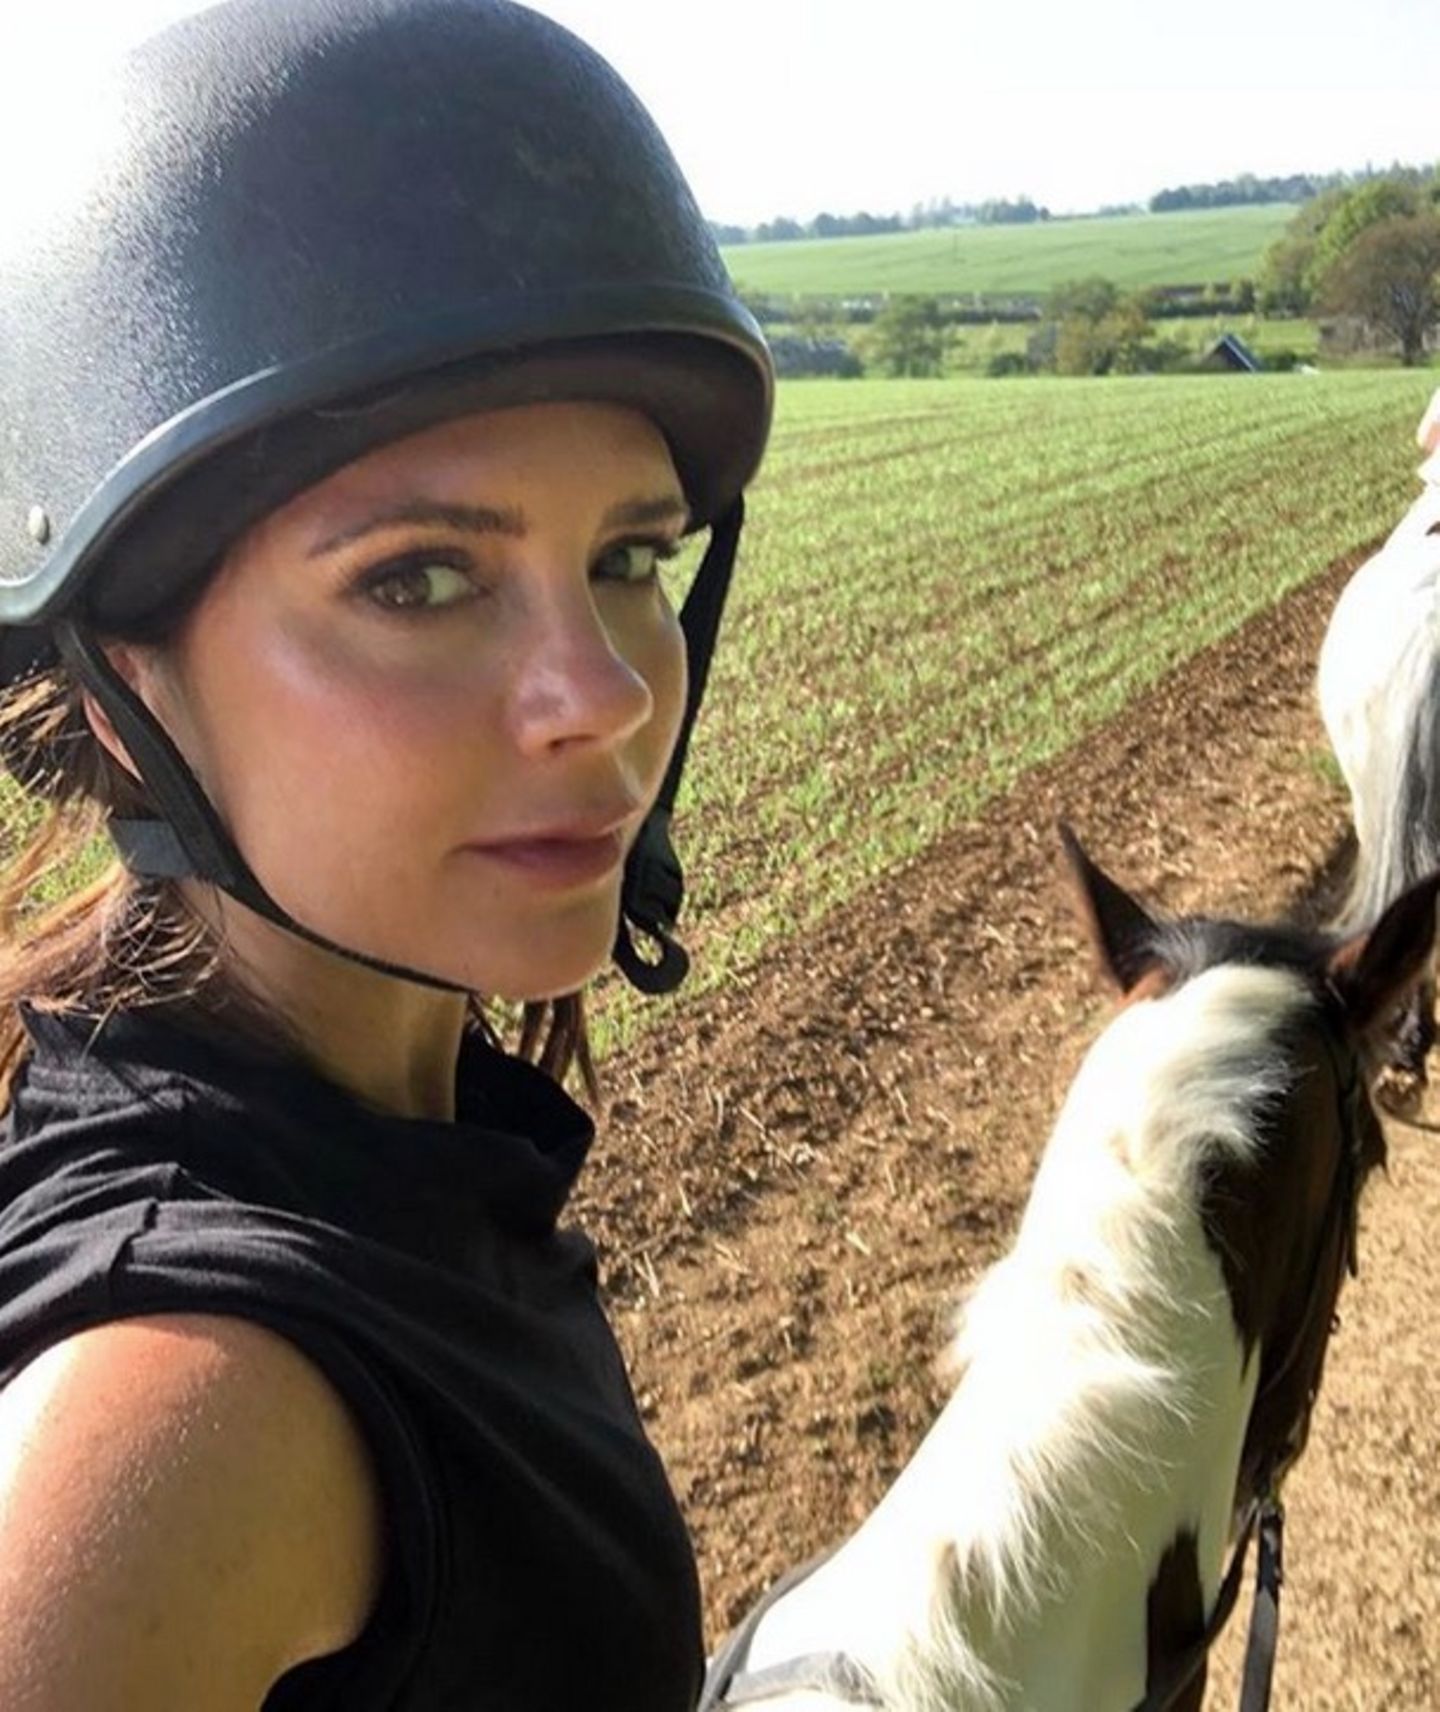 7. Mai 2018  So hat man die Mode-Diva Victoria Beckham noch nie gesehen. Auf ihrem Instagram-Account schreibt die schöne Britin, dass sie das Landleben liebe und den Ausritt mit Töchterchen Harper genieße. 